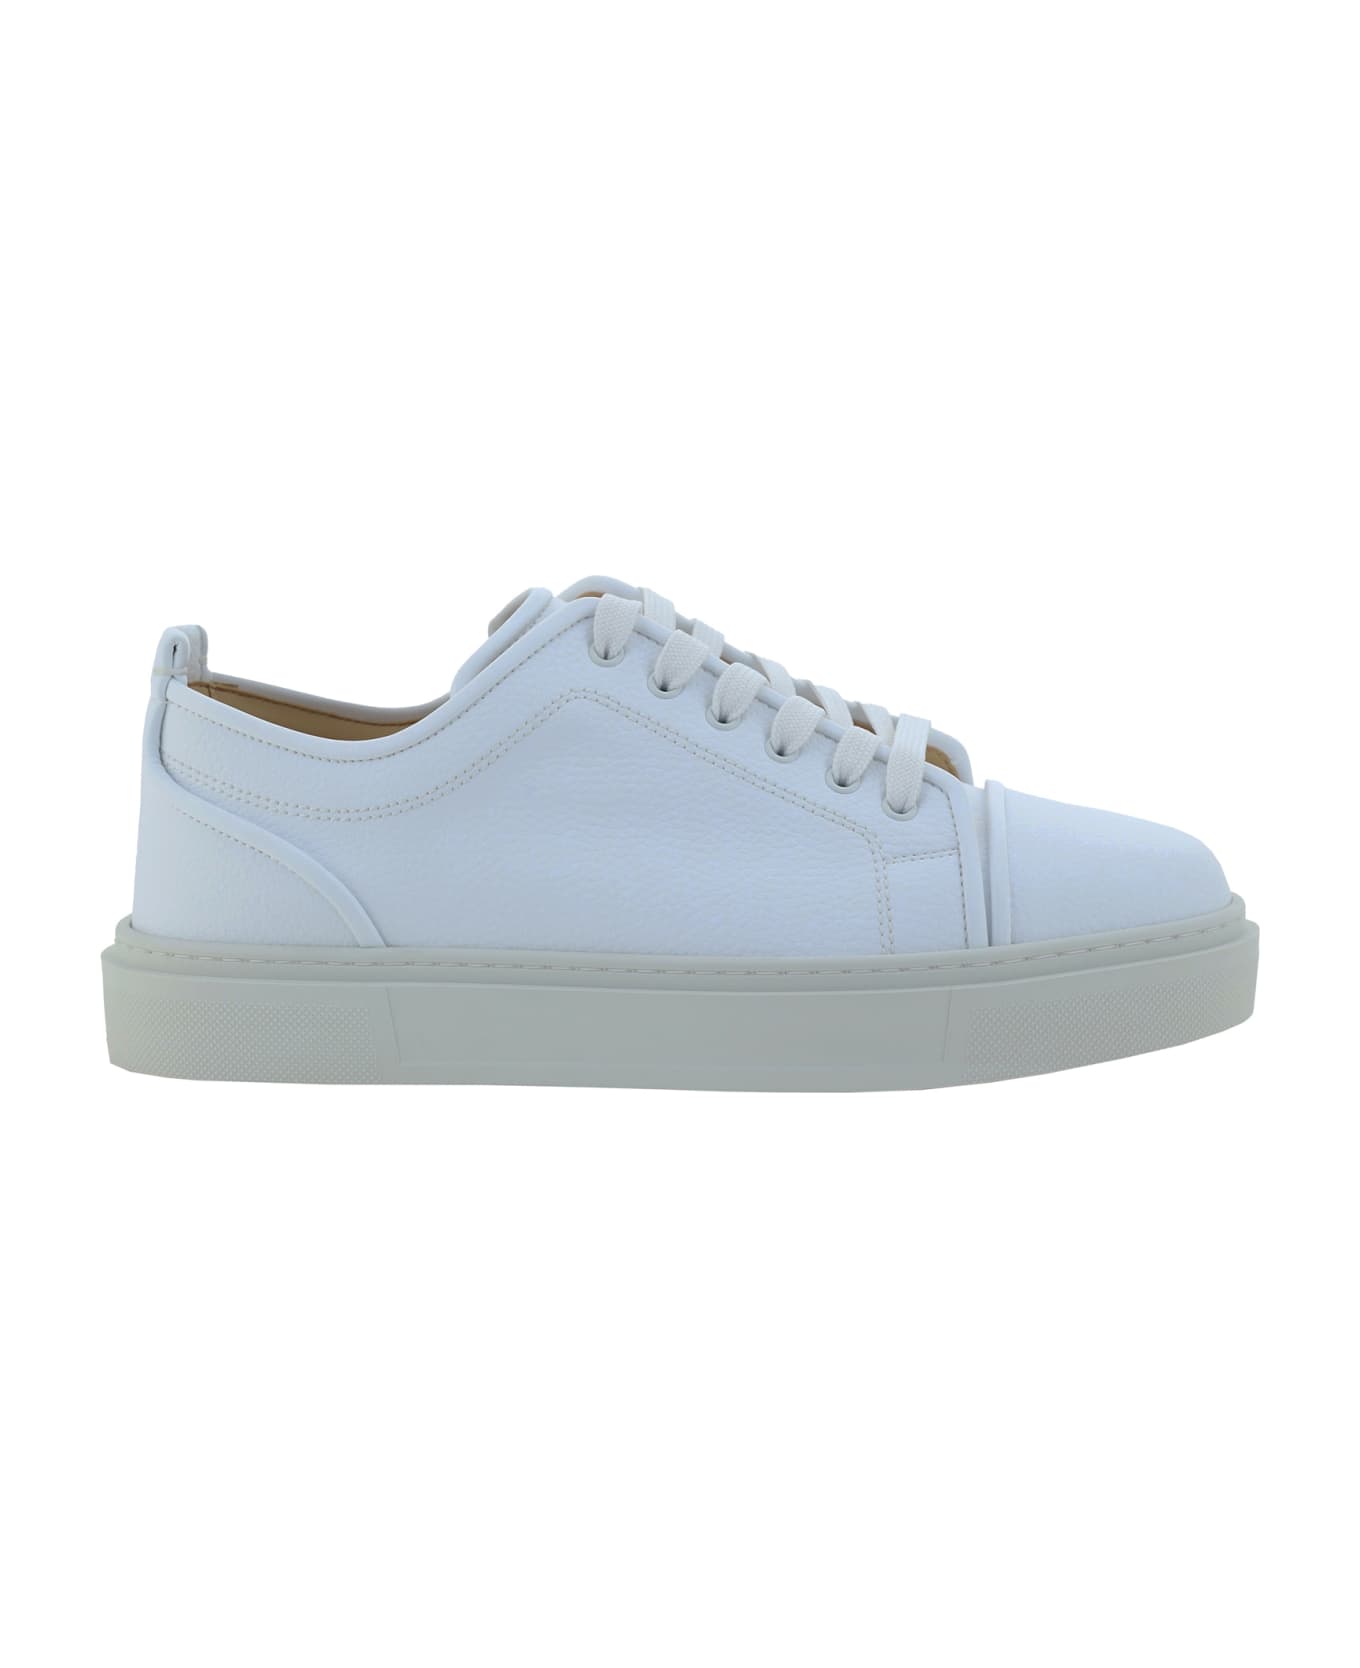 Christian Louboutin Adolon Kunior Sneakers - White